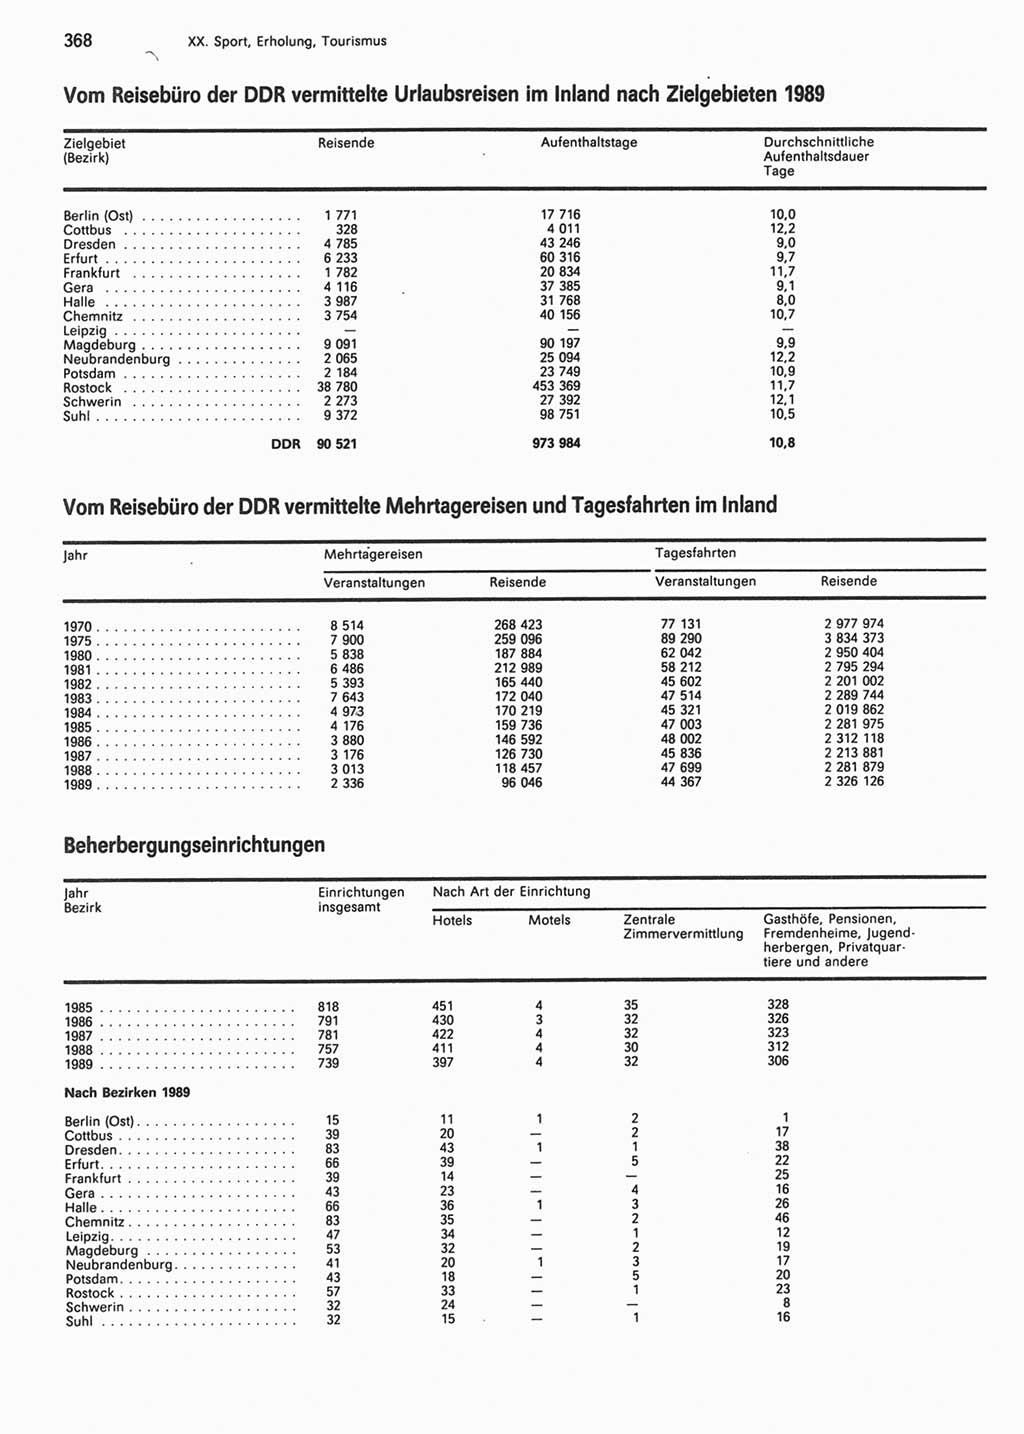 Statistisches Jahrbuch der Deutschen Demokratischen Republik (DDR) 1990, Seite 368 (Stat. Jb. DDR 1990, S. 368)